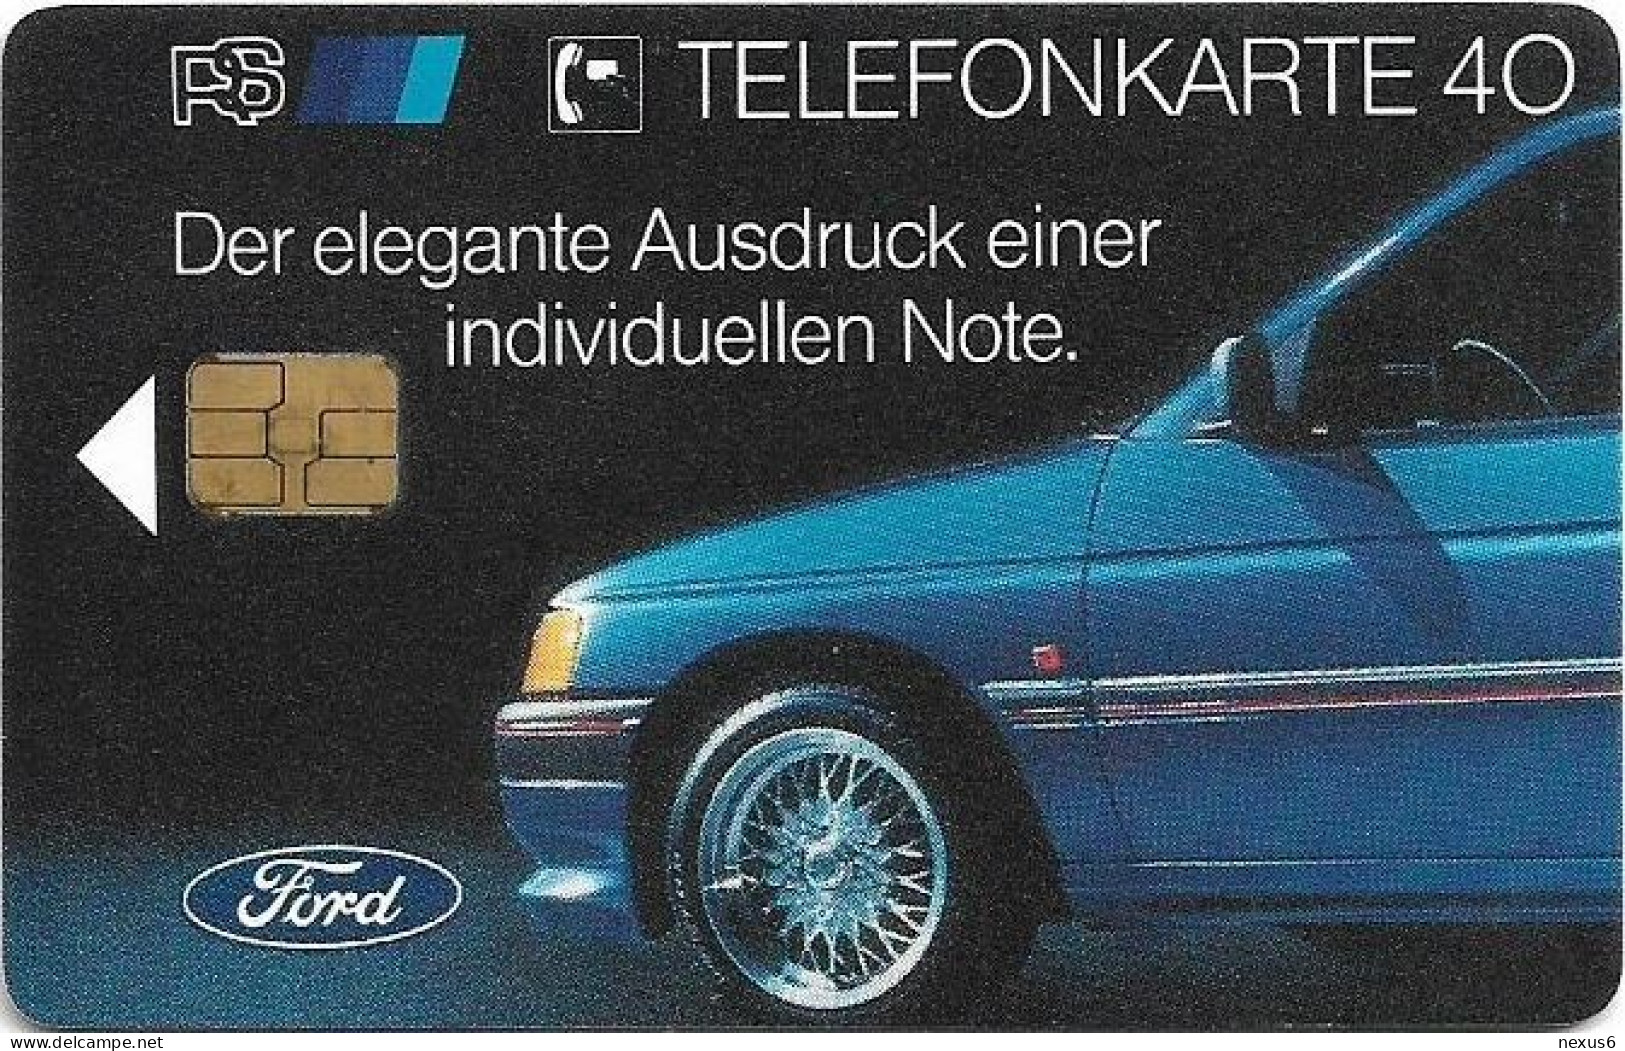 Germany - Ford 2 - RS Sport-Zubehör - O 0014 - 01.1992, 40U, 3.900ex, Mint - O-Series: Kundenserie Vom Sammlerservice Ausgeschlossen